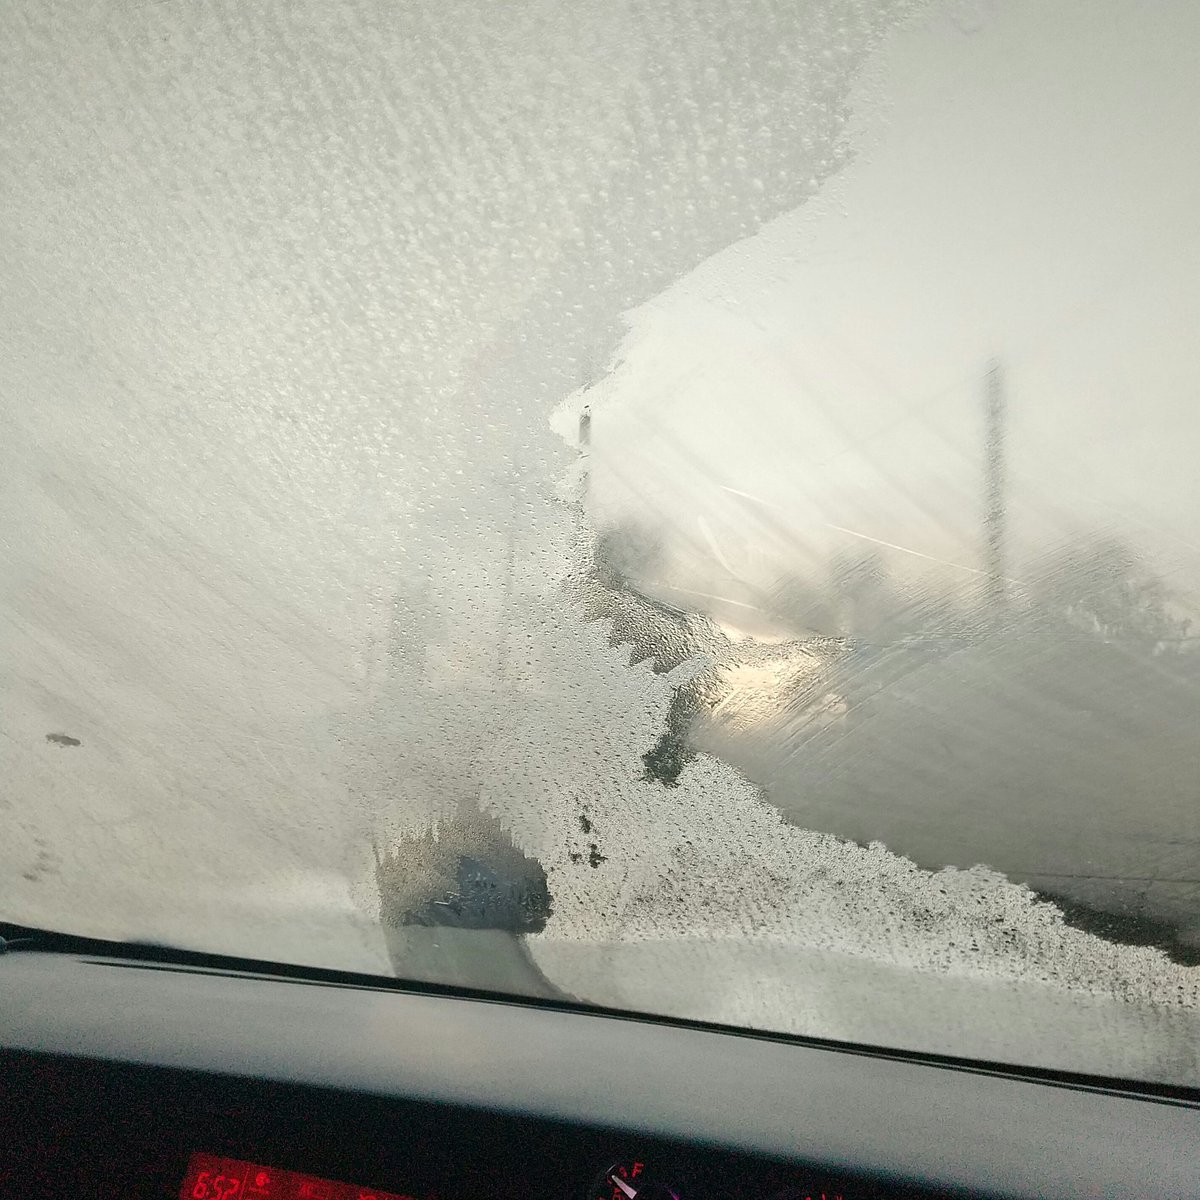 あるちゅう おすすめしたいこと キックアップ 車通勤で青空駐車の人は フロントガラスが凍ってるから お湯か 氷用のスプレー持って 車のとこ行った方がいいよ